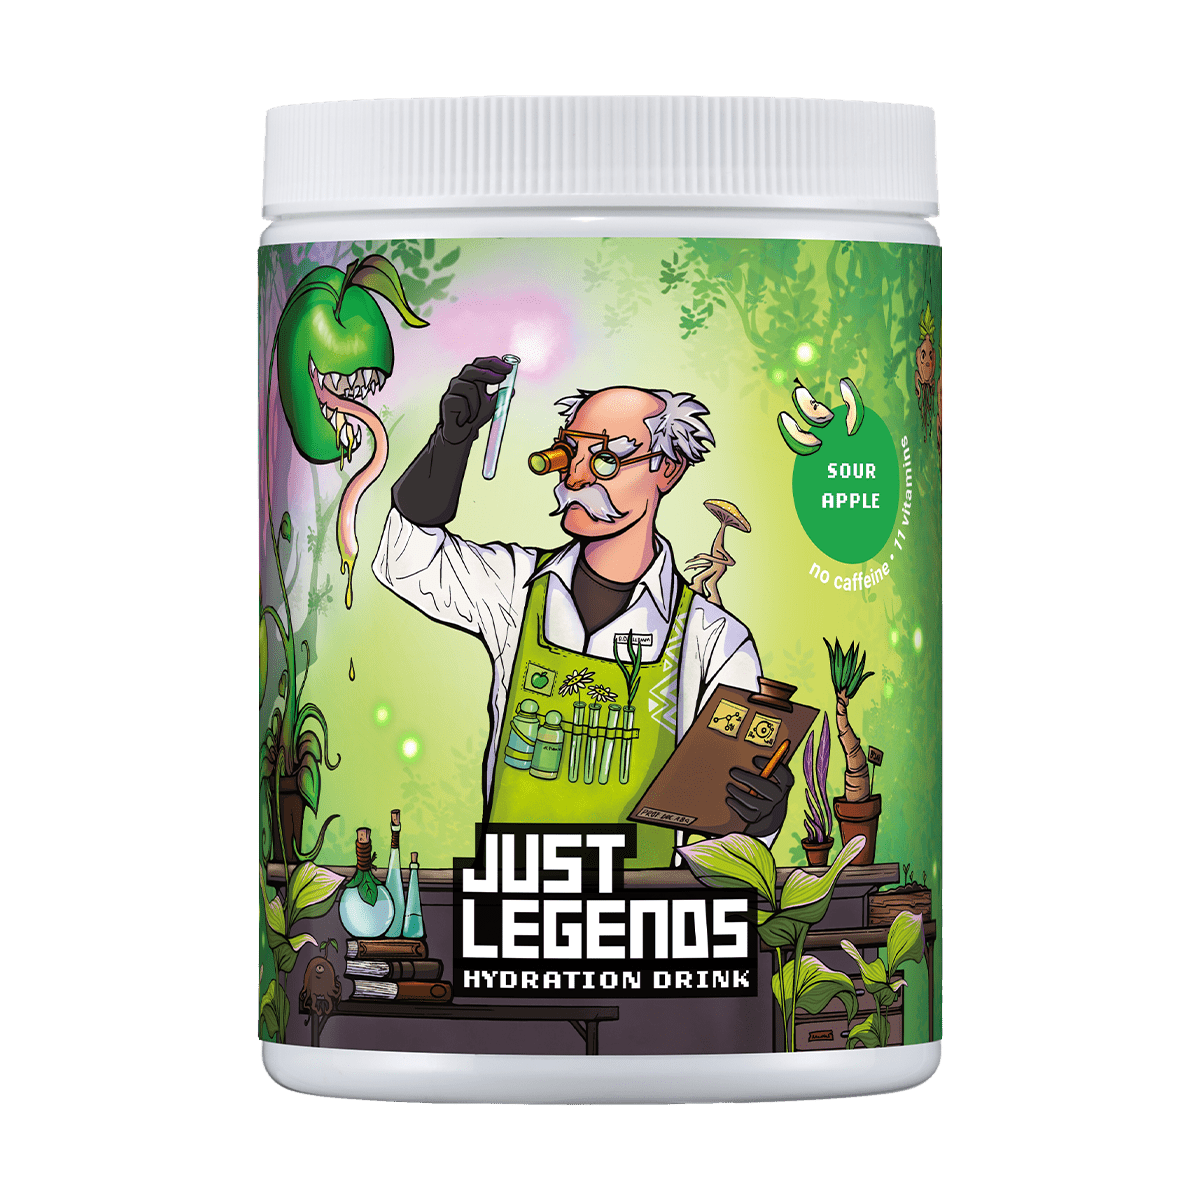 Just Legends Hydration Drink | Funktionaler, veganer Cross Sell auf Pulverbasis ohne Zucker, mit wenig Kalorien, vielen Vitaminen und natürlichen Aromen.